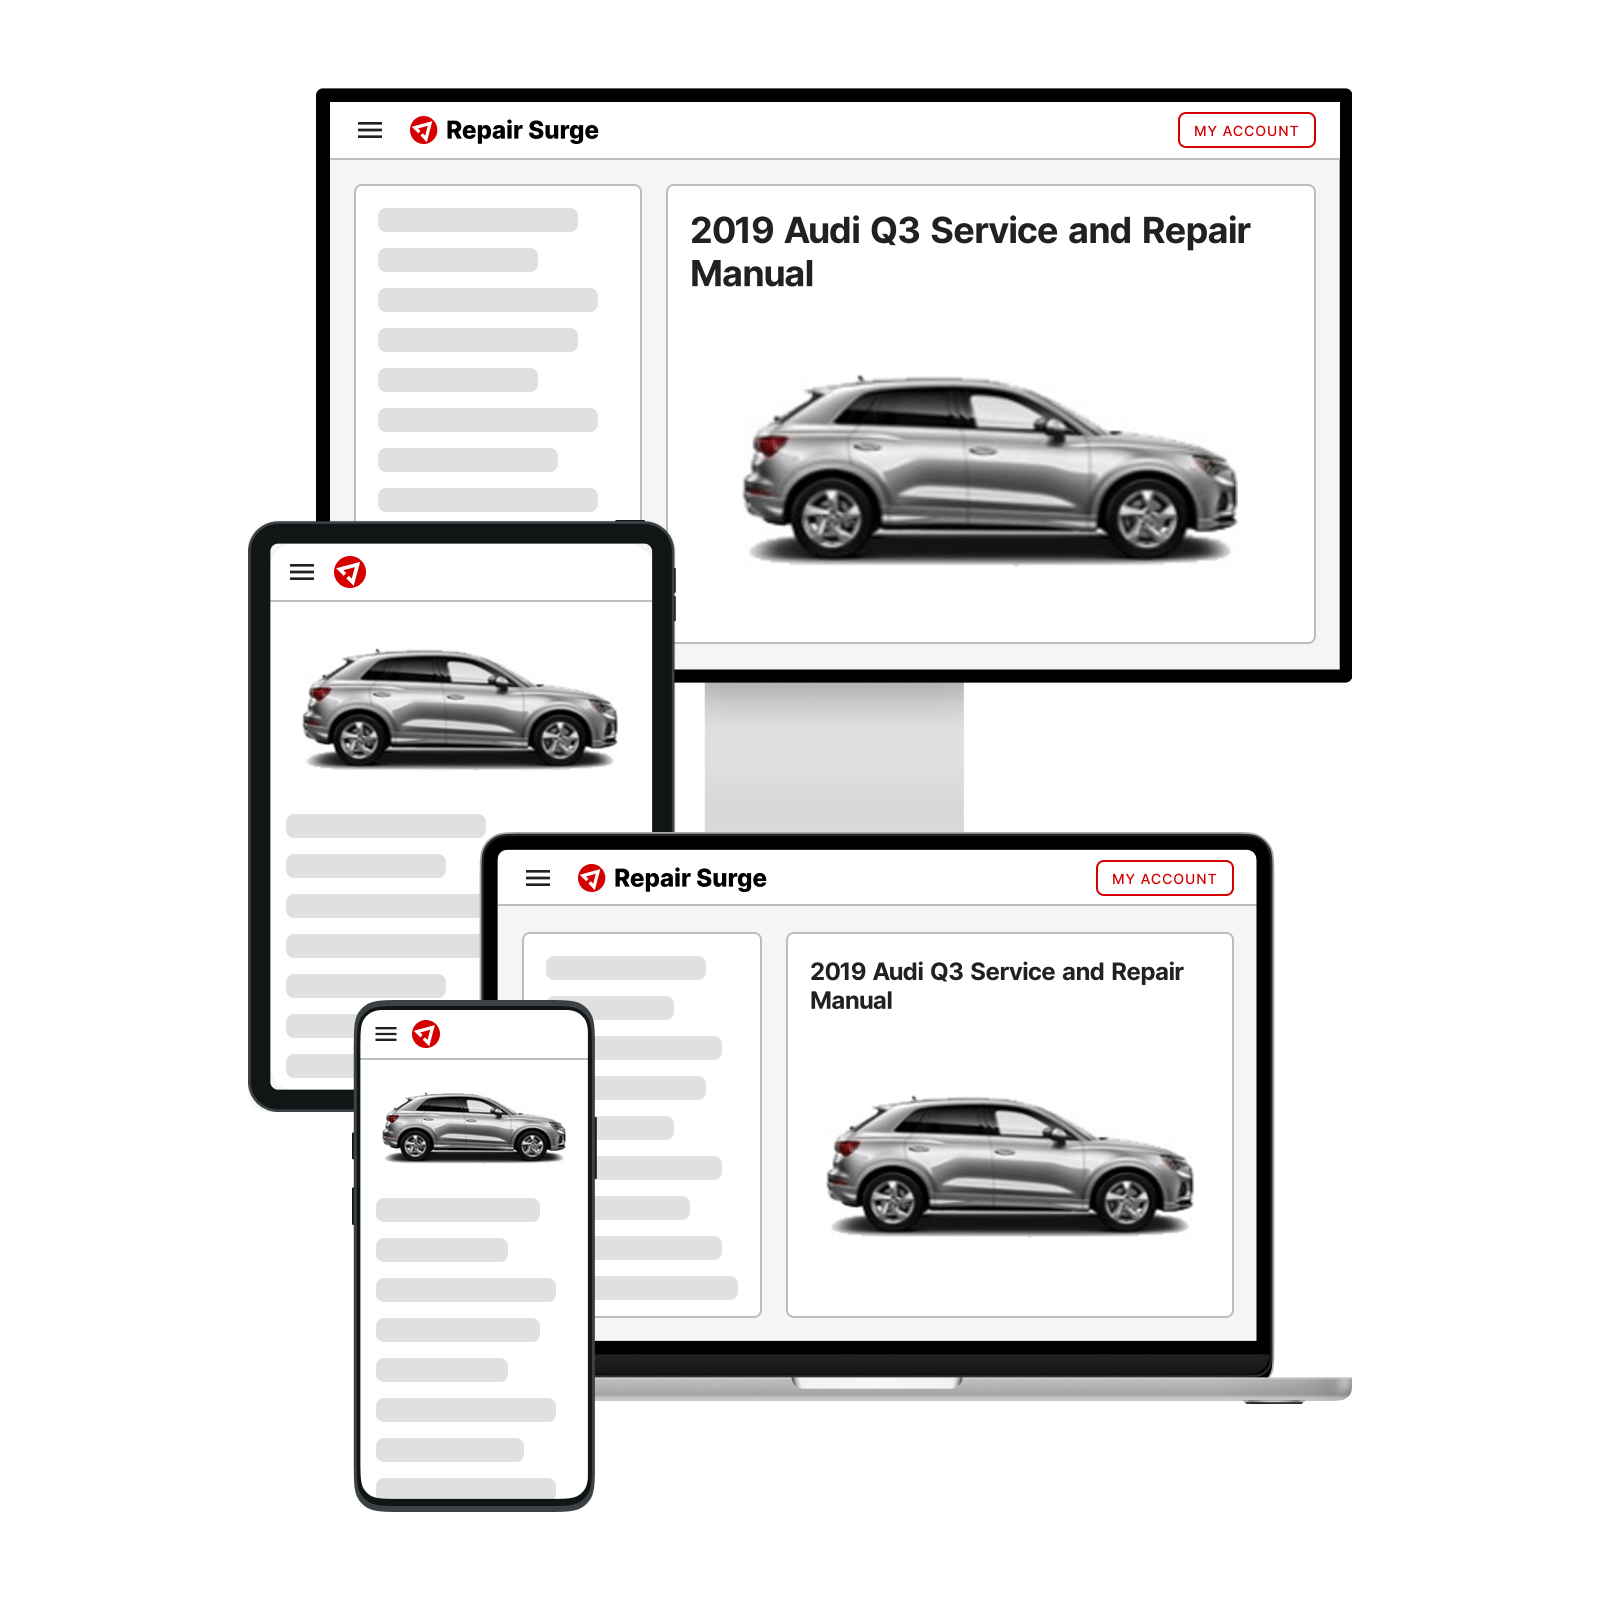 2019 Audi Q3 service and repair manual hero image